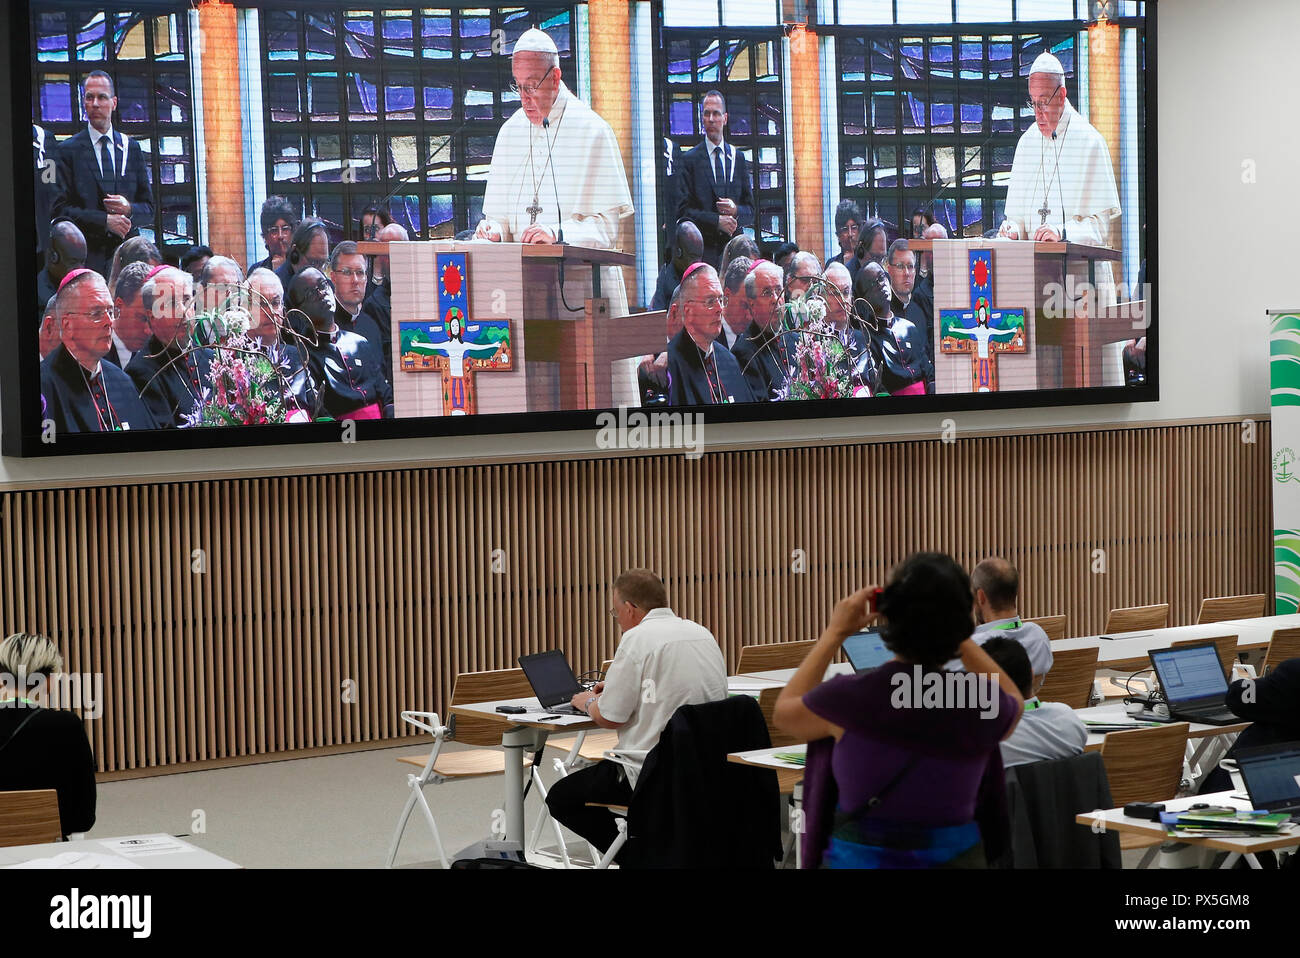 Il 21 giugno 2018, il Consiglio Mondiale delle Chiese riceve la visita del Santo Padre Francesco della Chiesa Cattolica Romana. Servizio ecumenico di preghiera vista da th Foto Stock